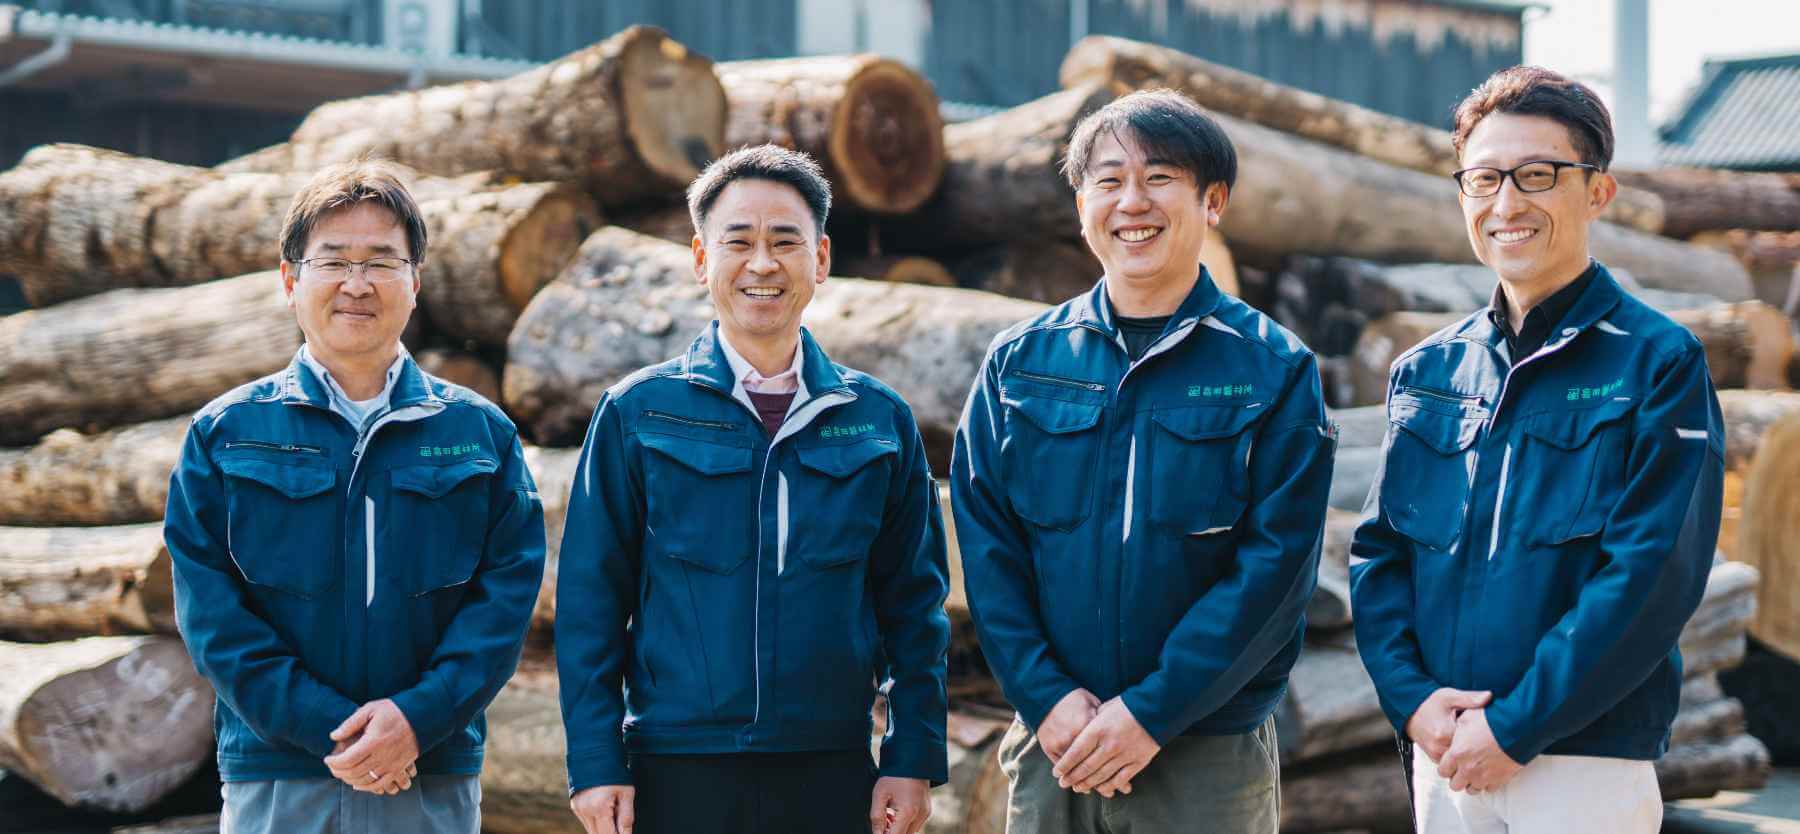 積み上げられた原木の前で、木材アドバイザーの男性4人が笑っている写真。